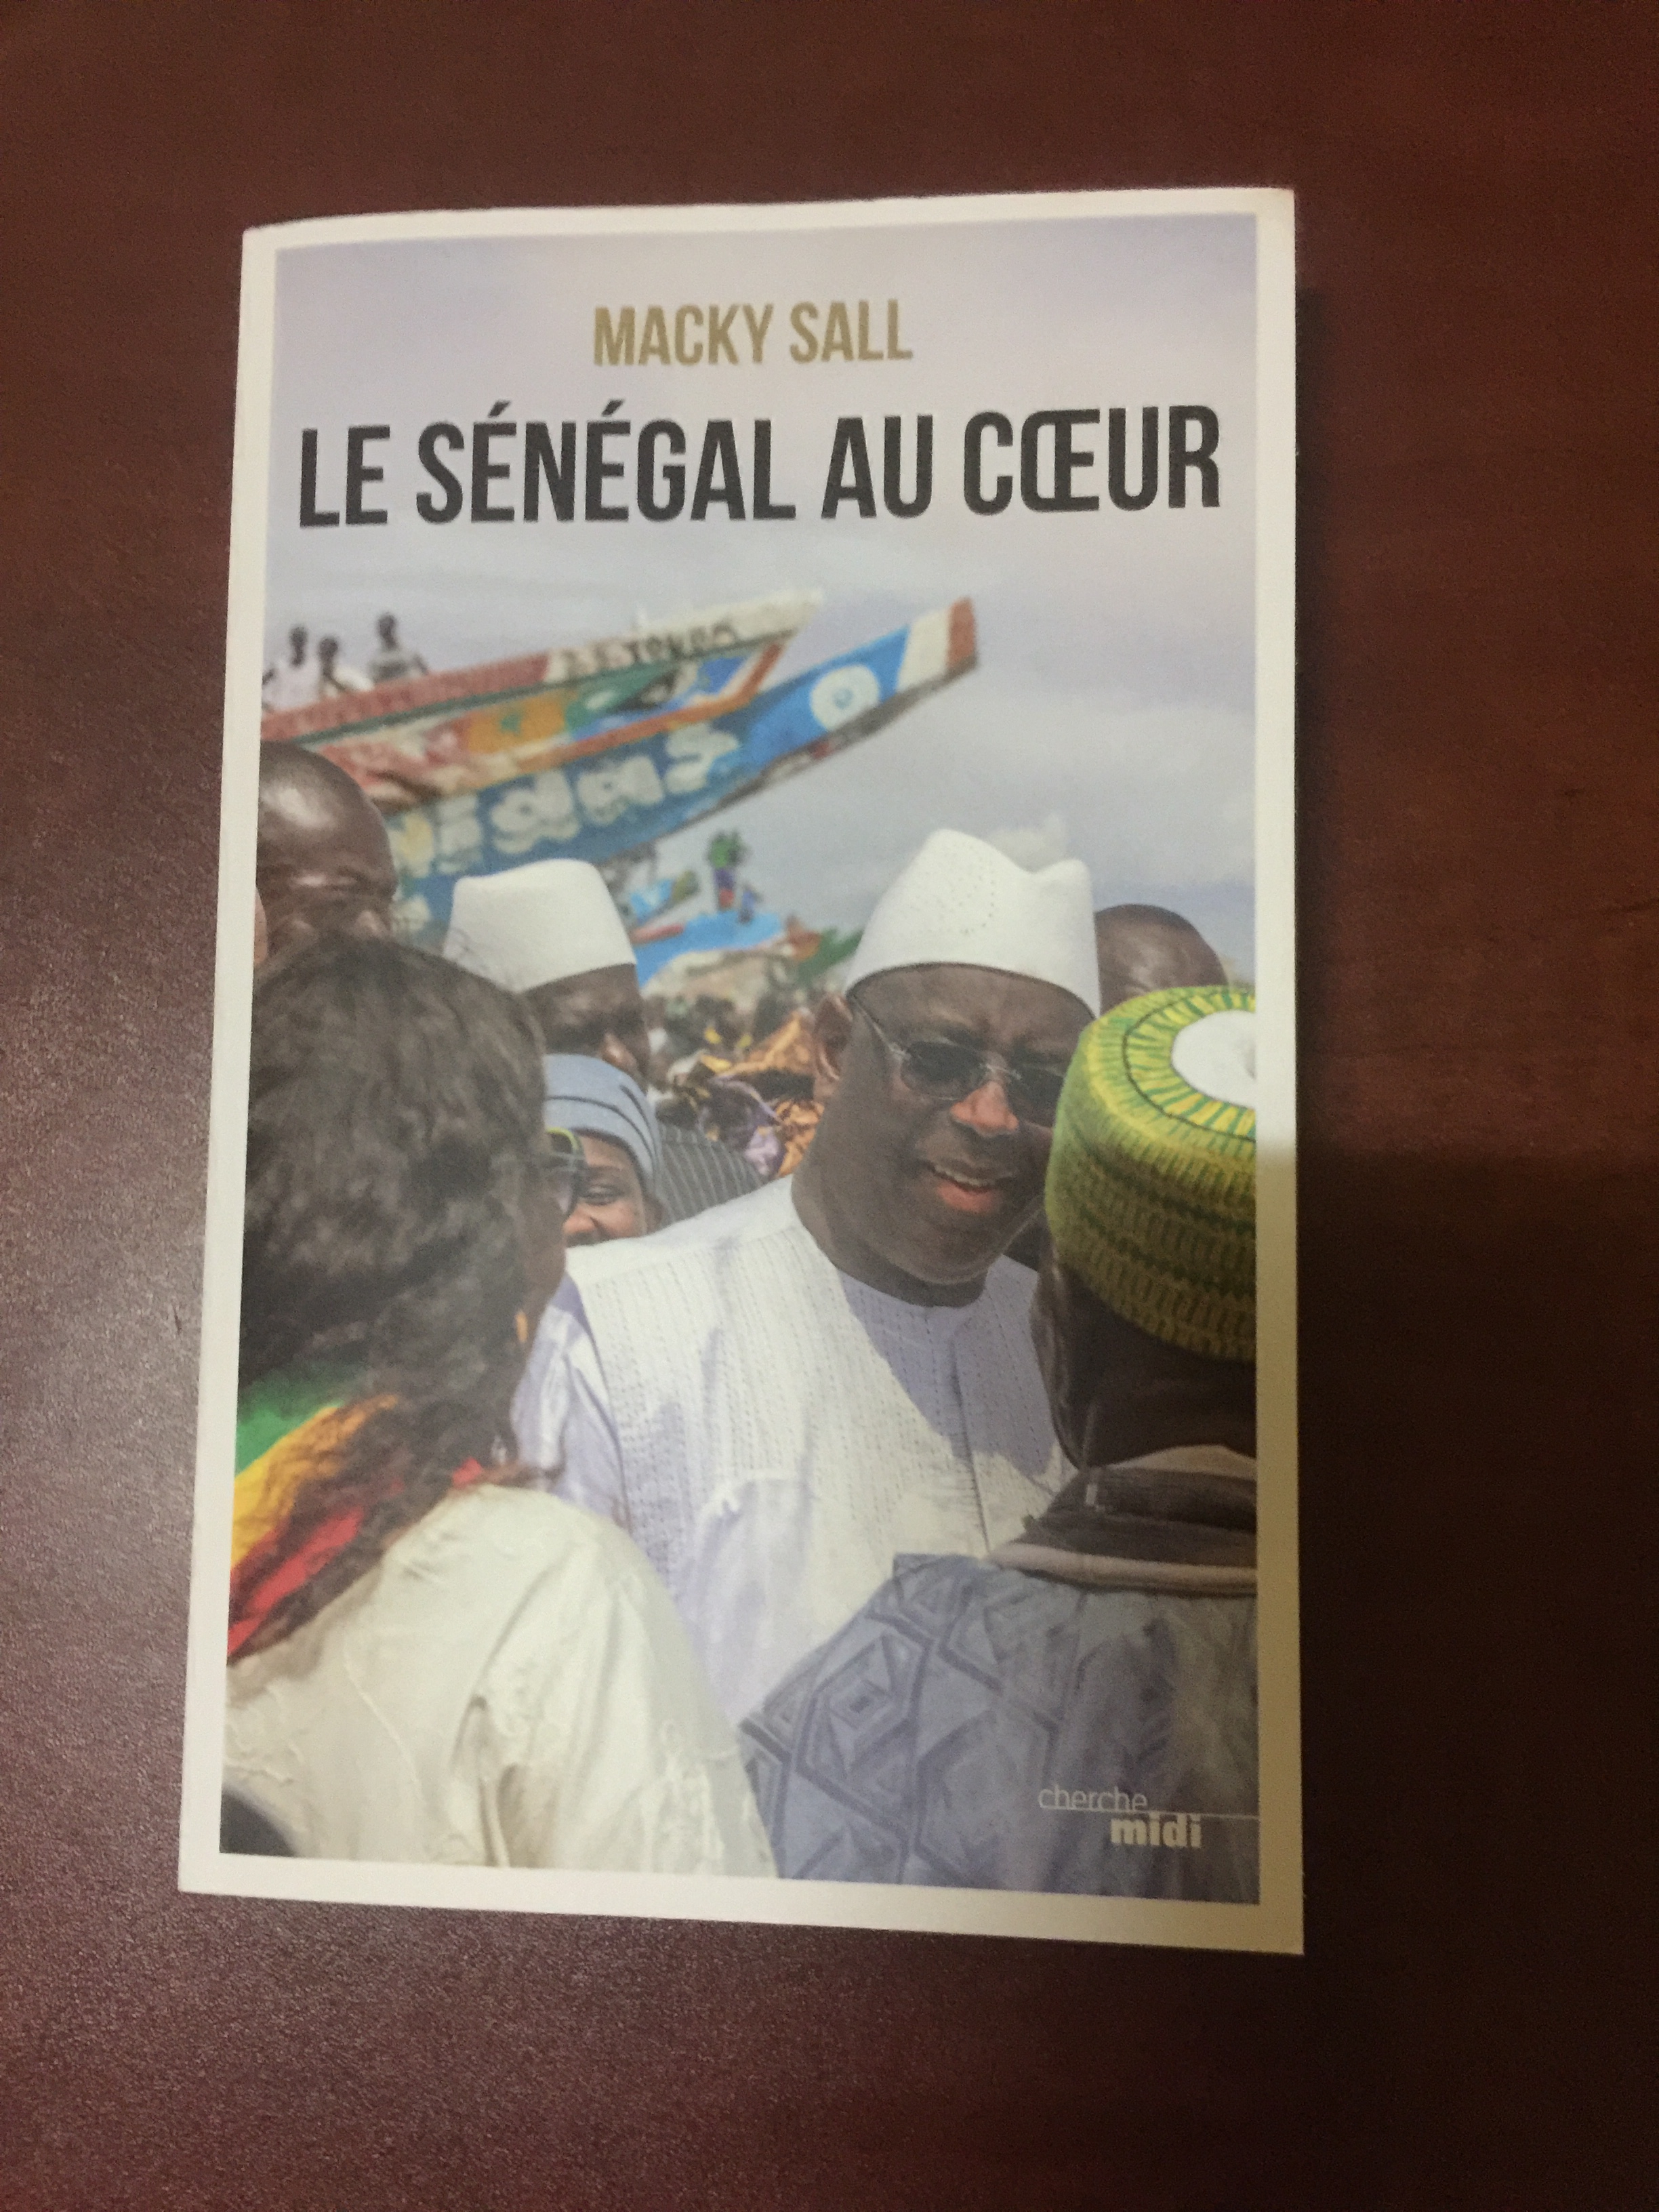 «Le SÉNÉGAL AU CŒUR» : Quand le président s’adresse aux sénégalais à travers un livre